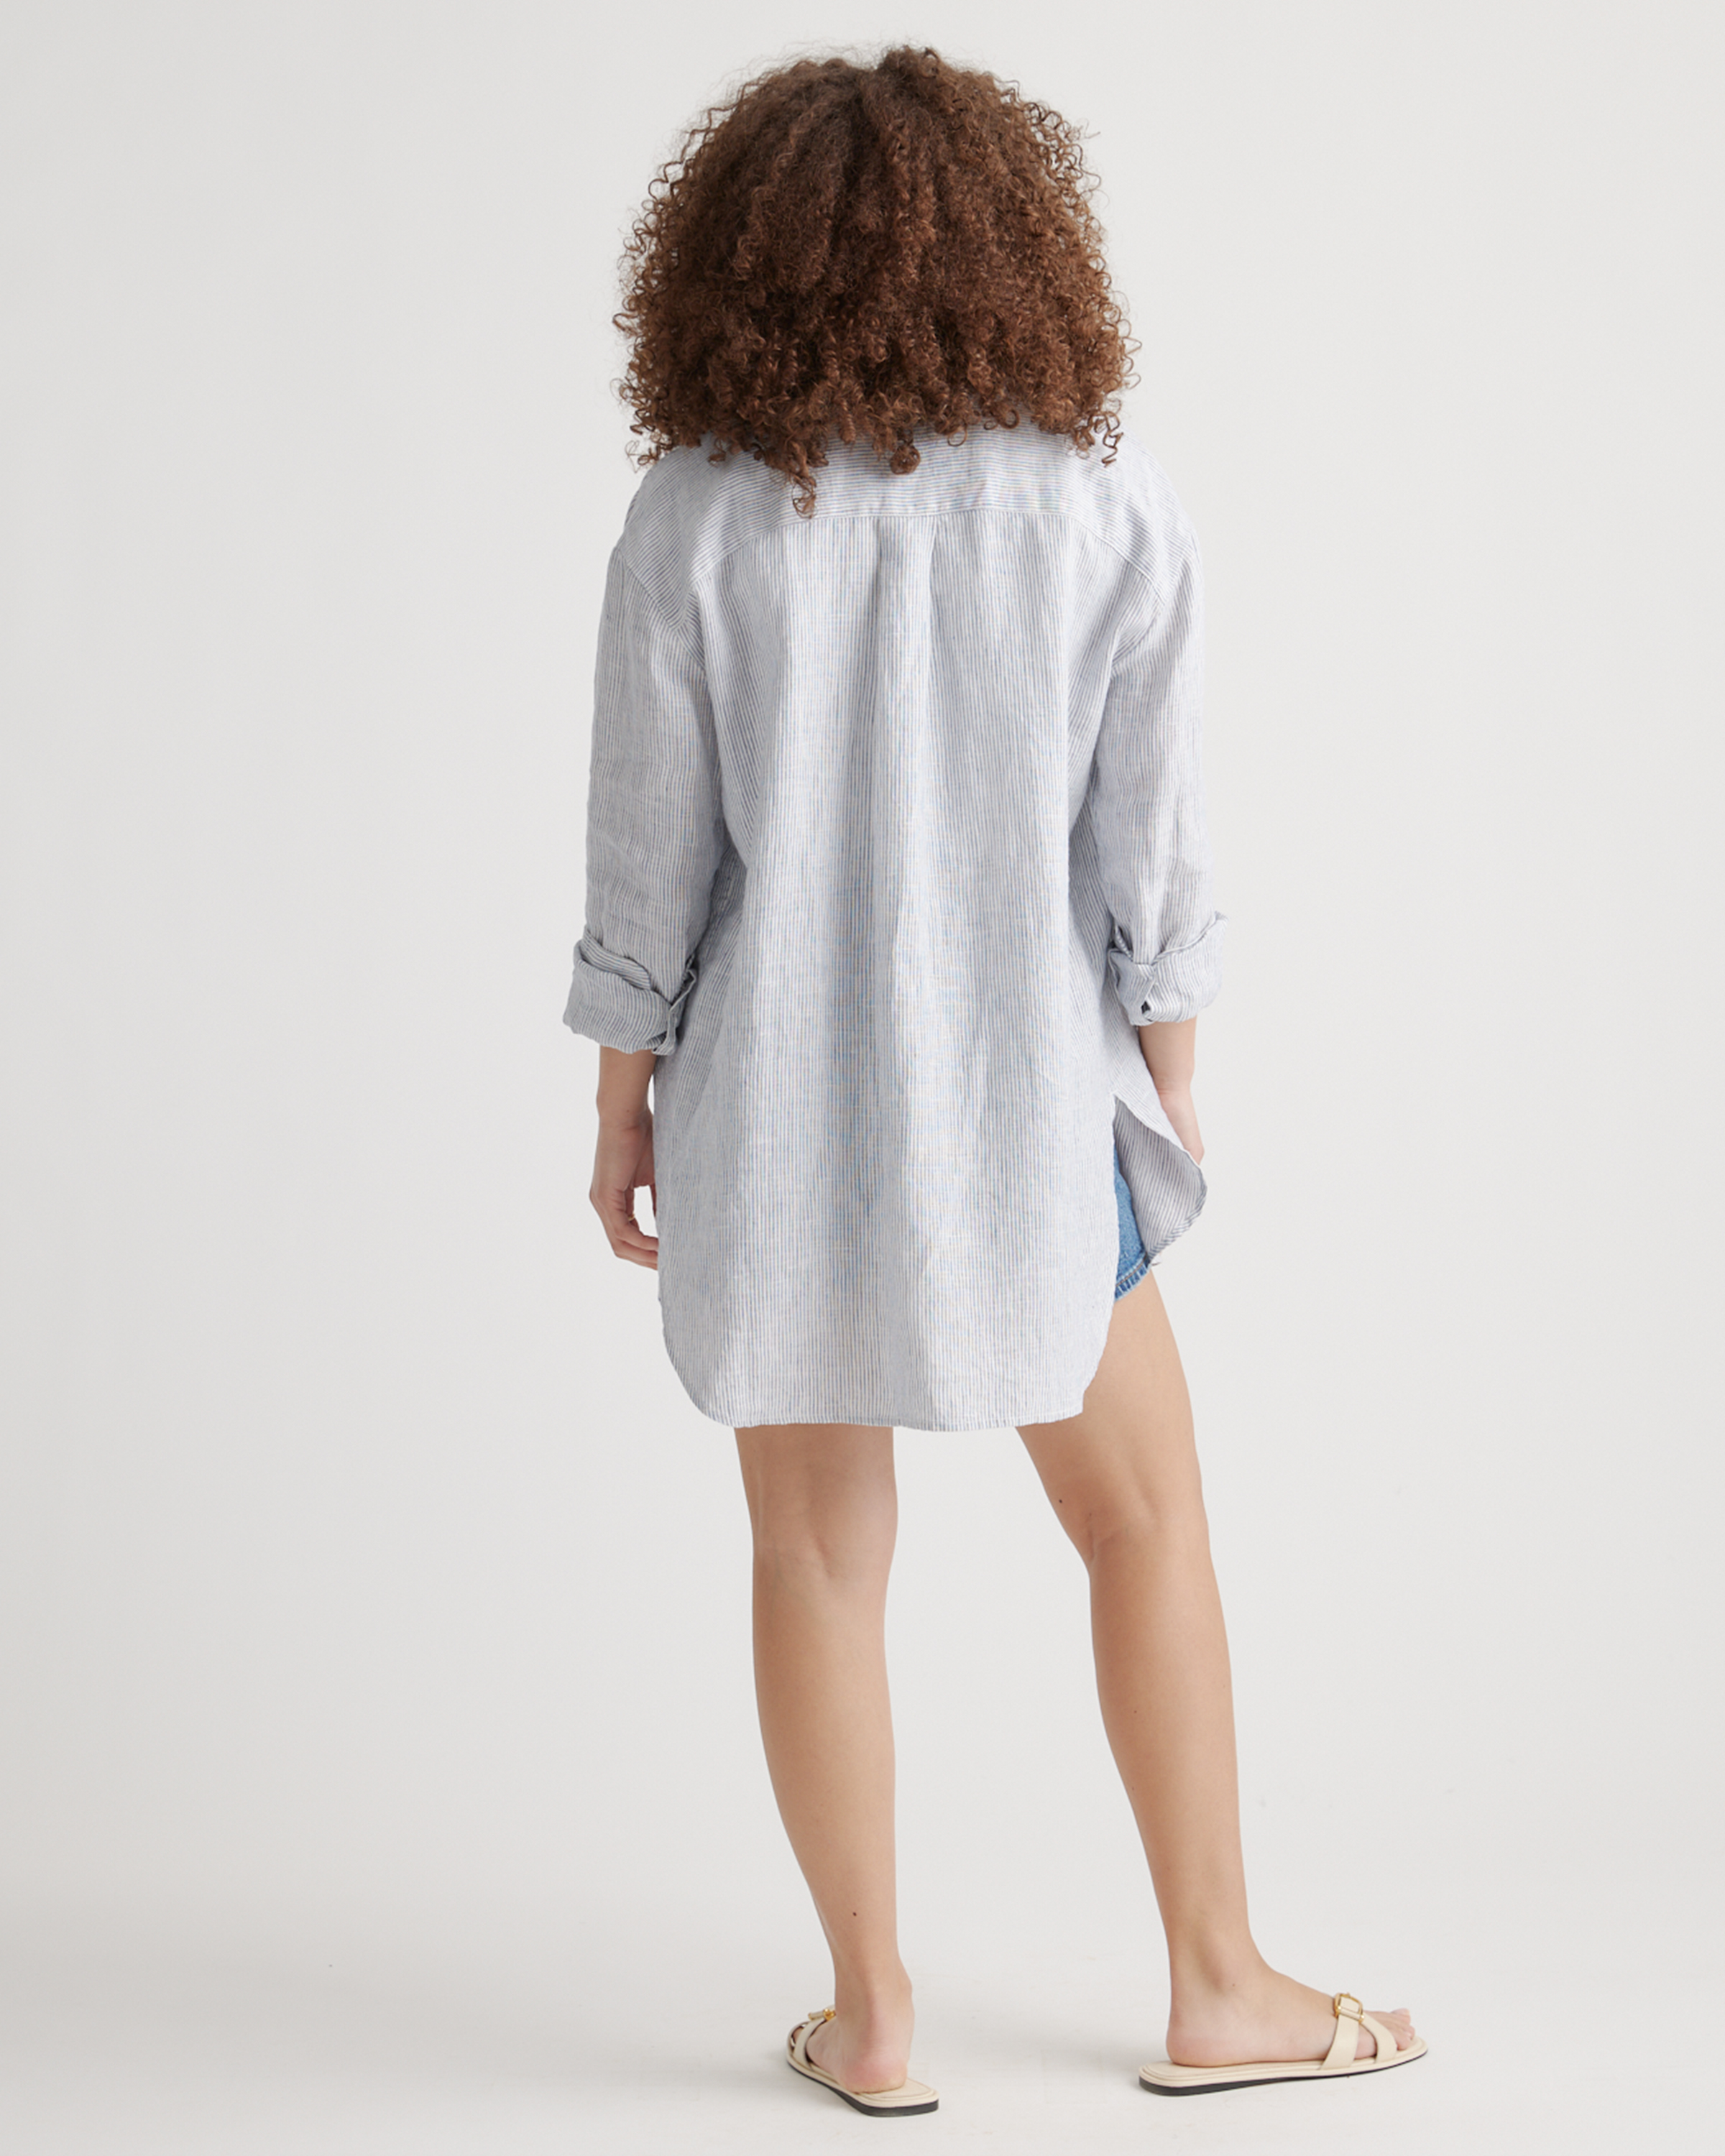 Quince 100% European Linen Shirt Dress XL NWT Sand